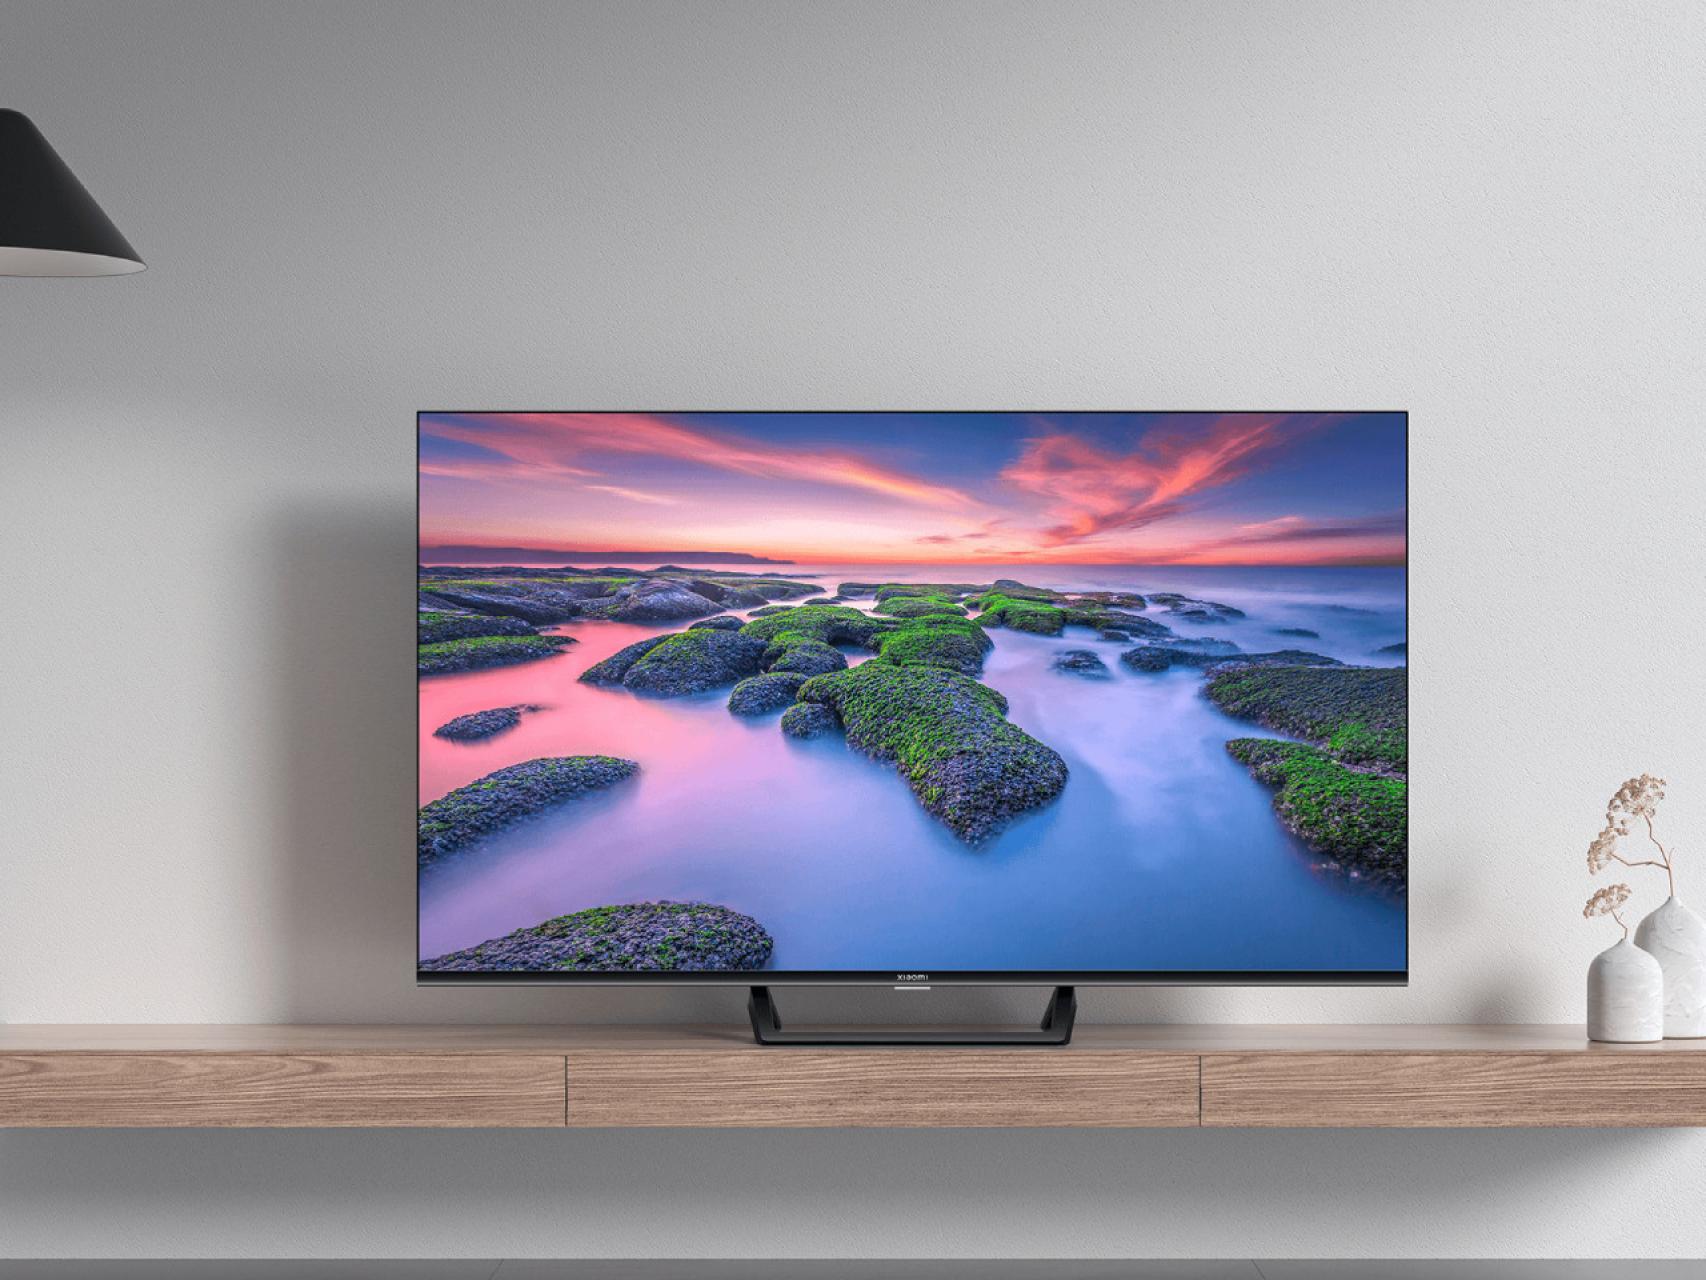 Comprar un televisor barato de Xiaomi: todo lo qué debes tener en